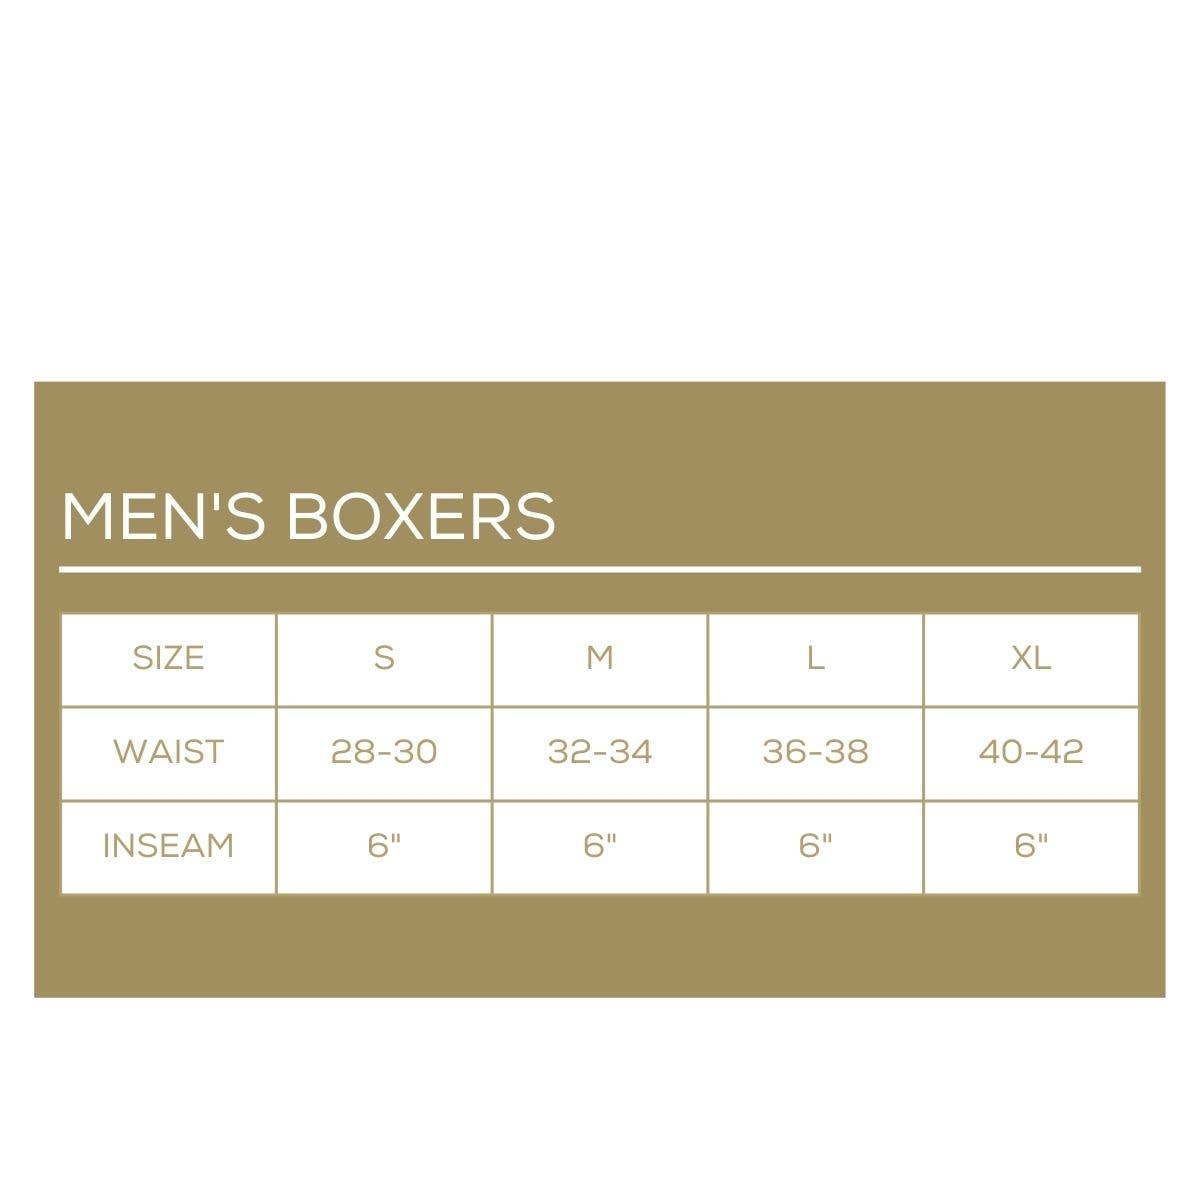 Men's Christmas Fir Boxers   Red/Green   -Asst.: Small